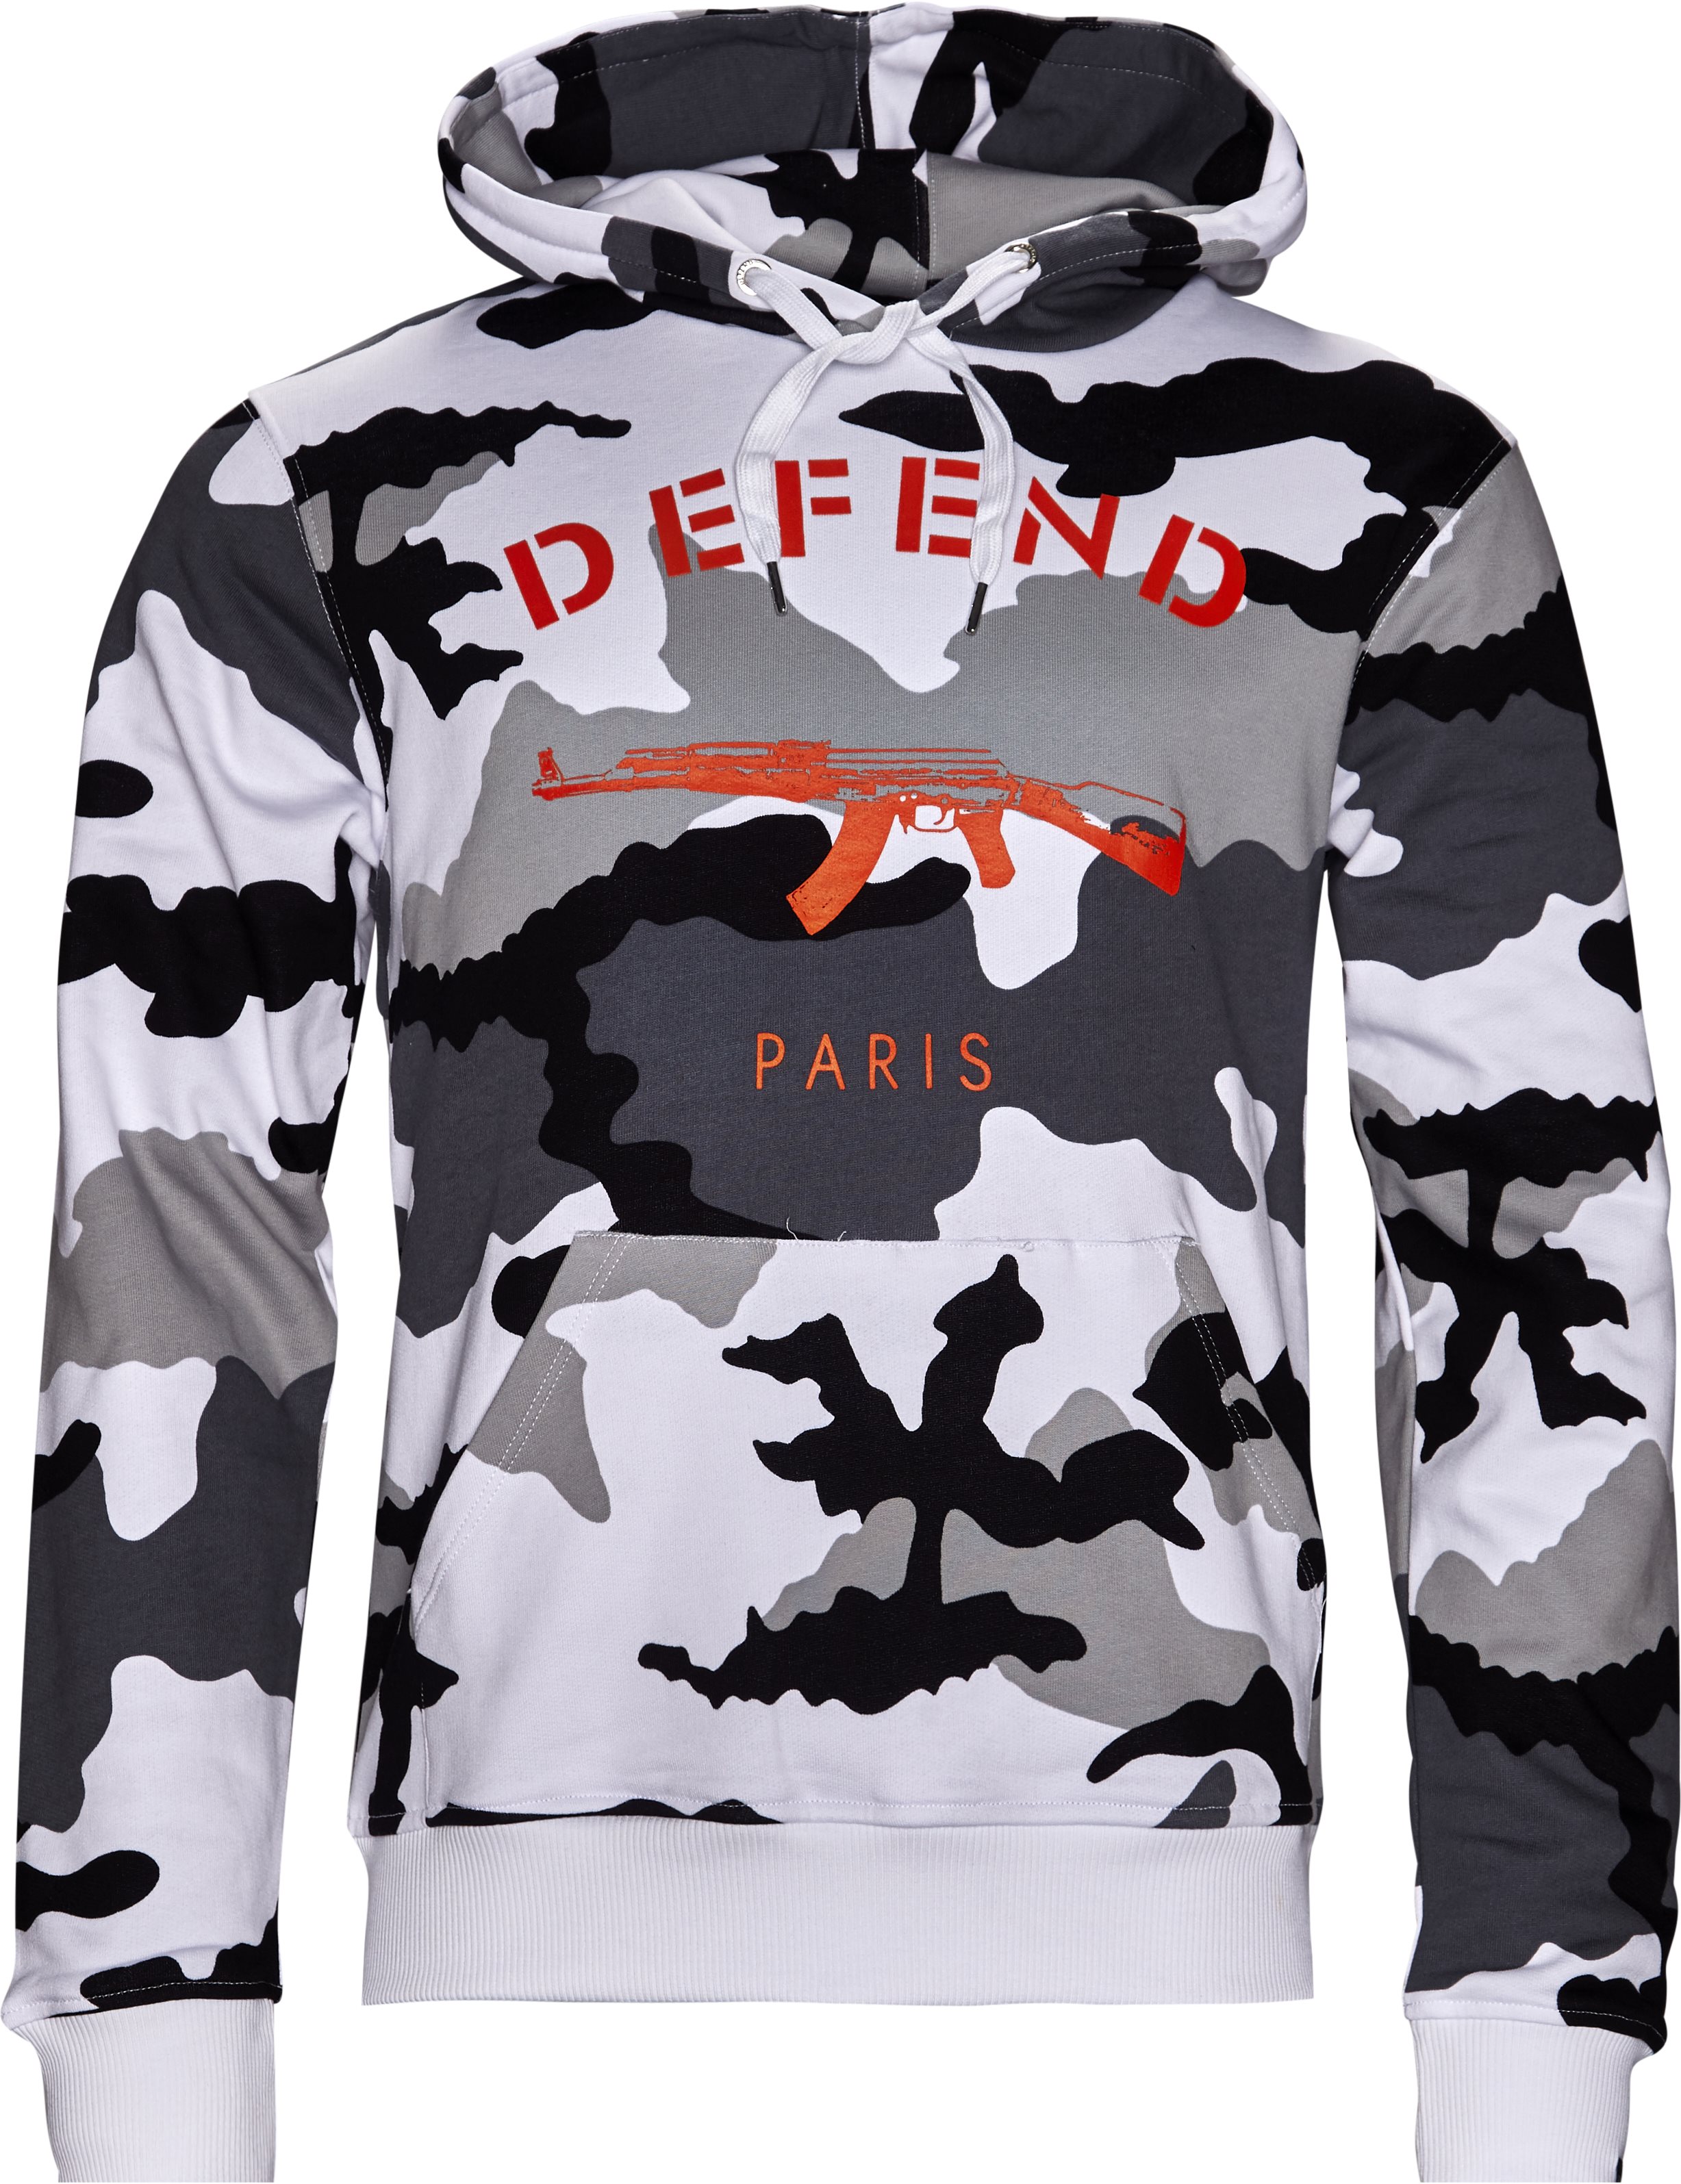 Procent Alabama Blåt mærke PARIS HOOD CAMO BLACK/WHITE Sweatshirts SORT/HVID fra Defend Paris 399 DKK